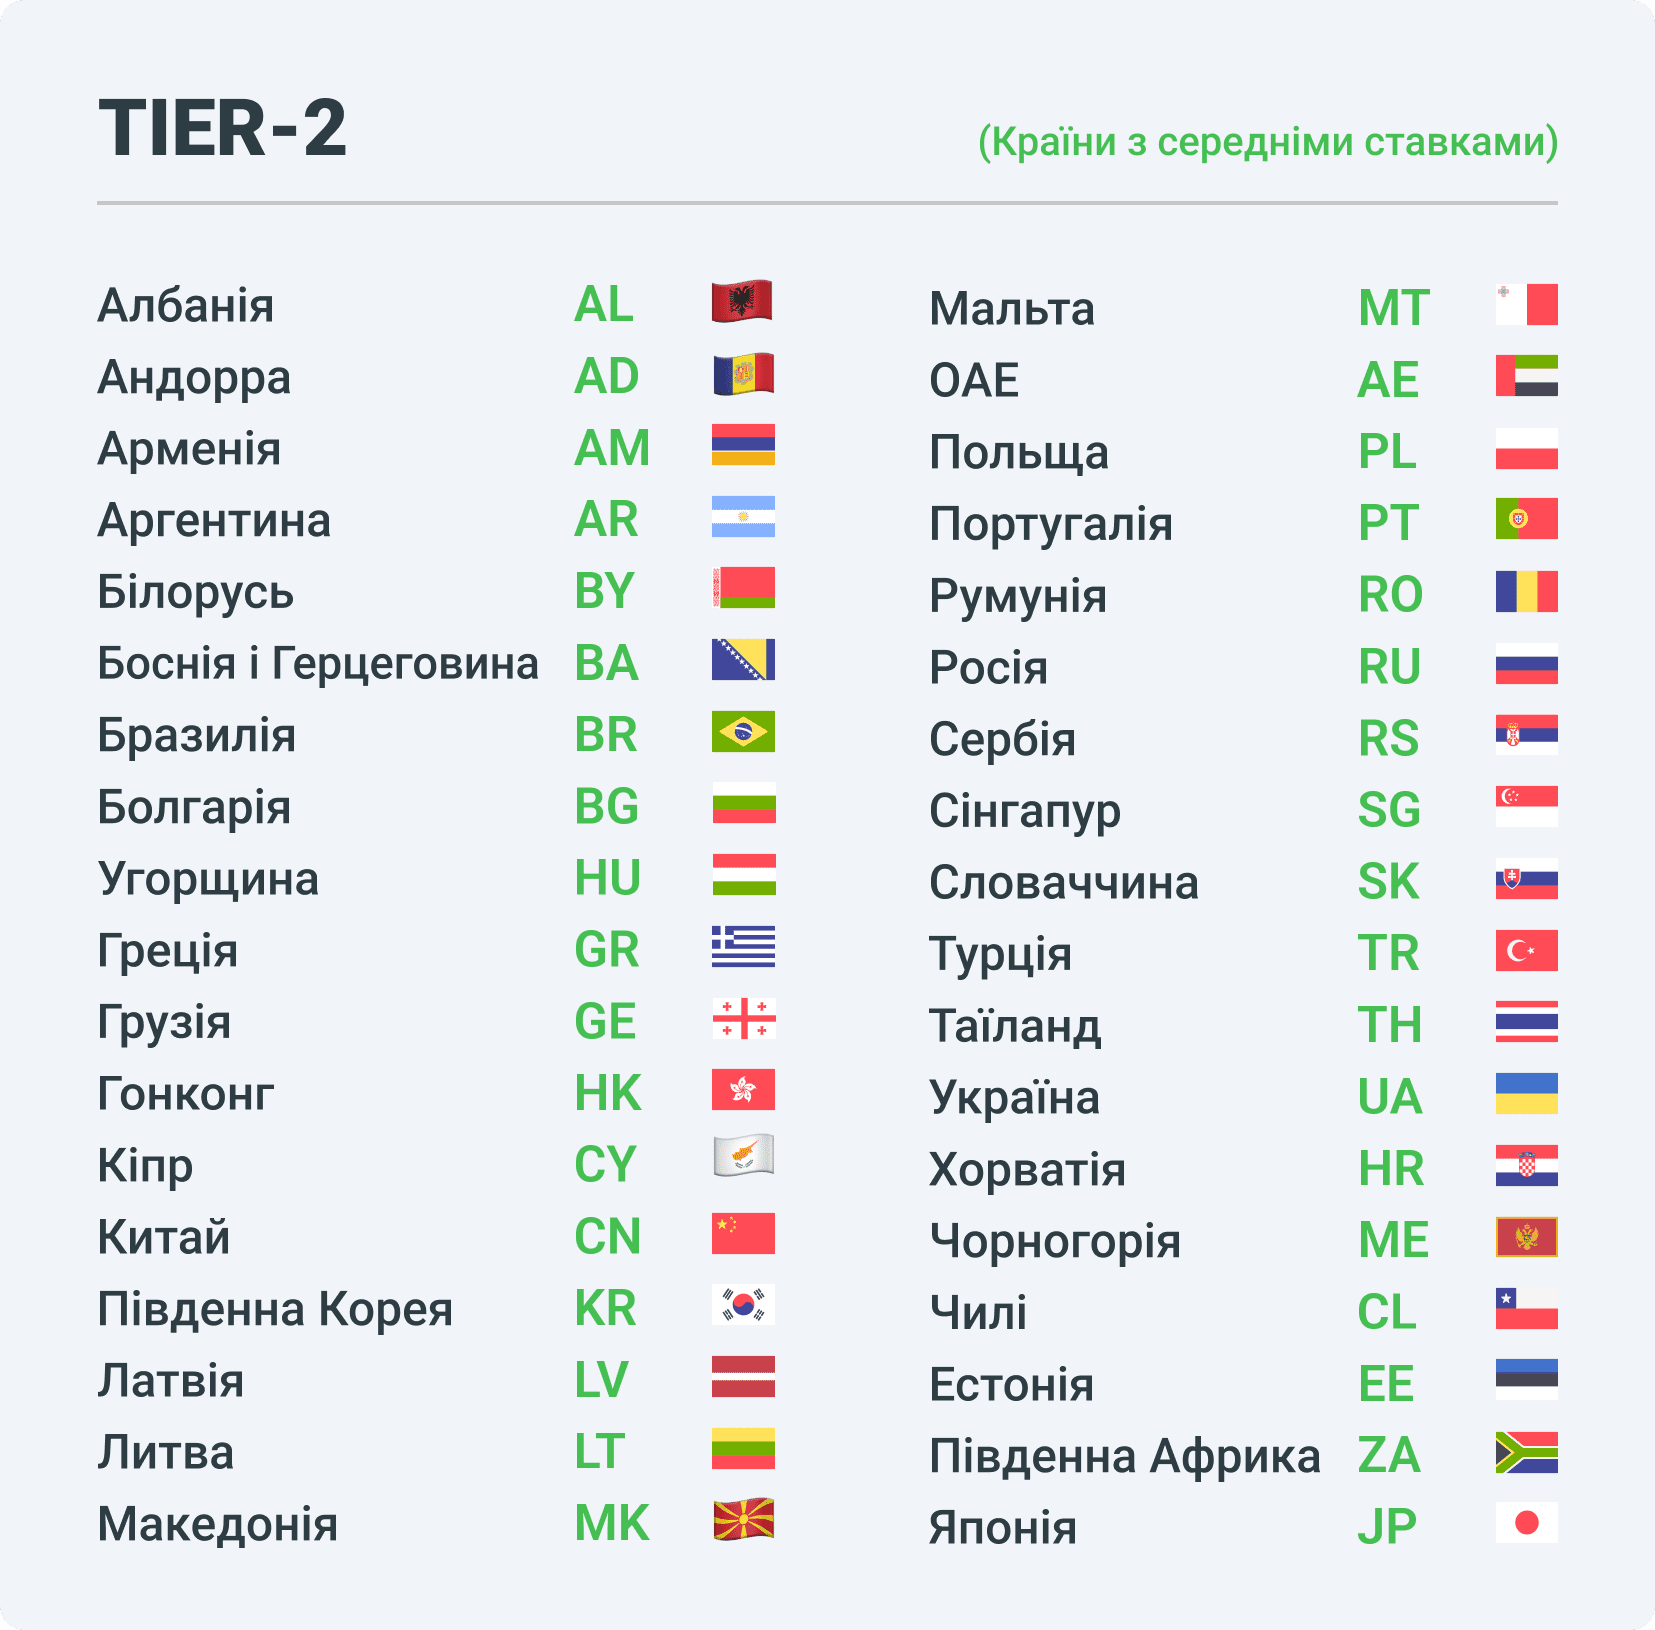 Tier2 - країни зі середніми ставками в арбітражі трафіку